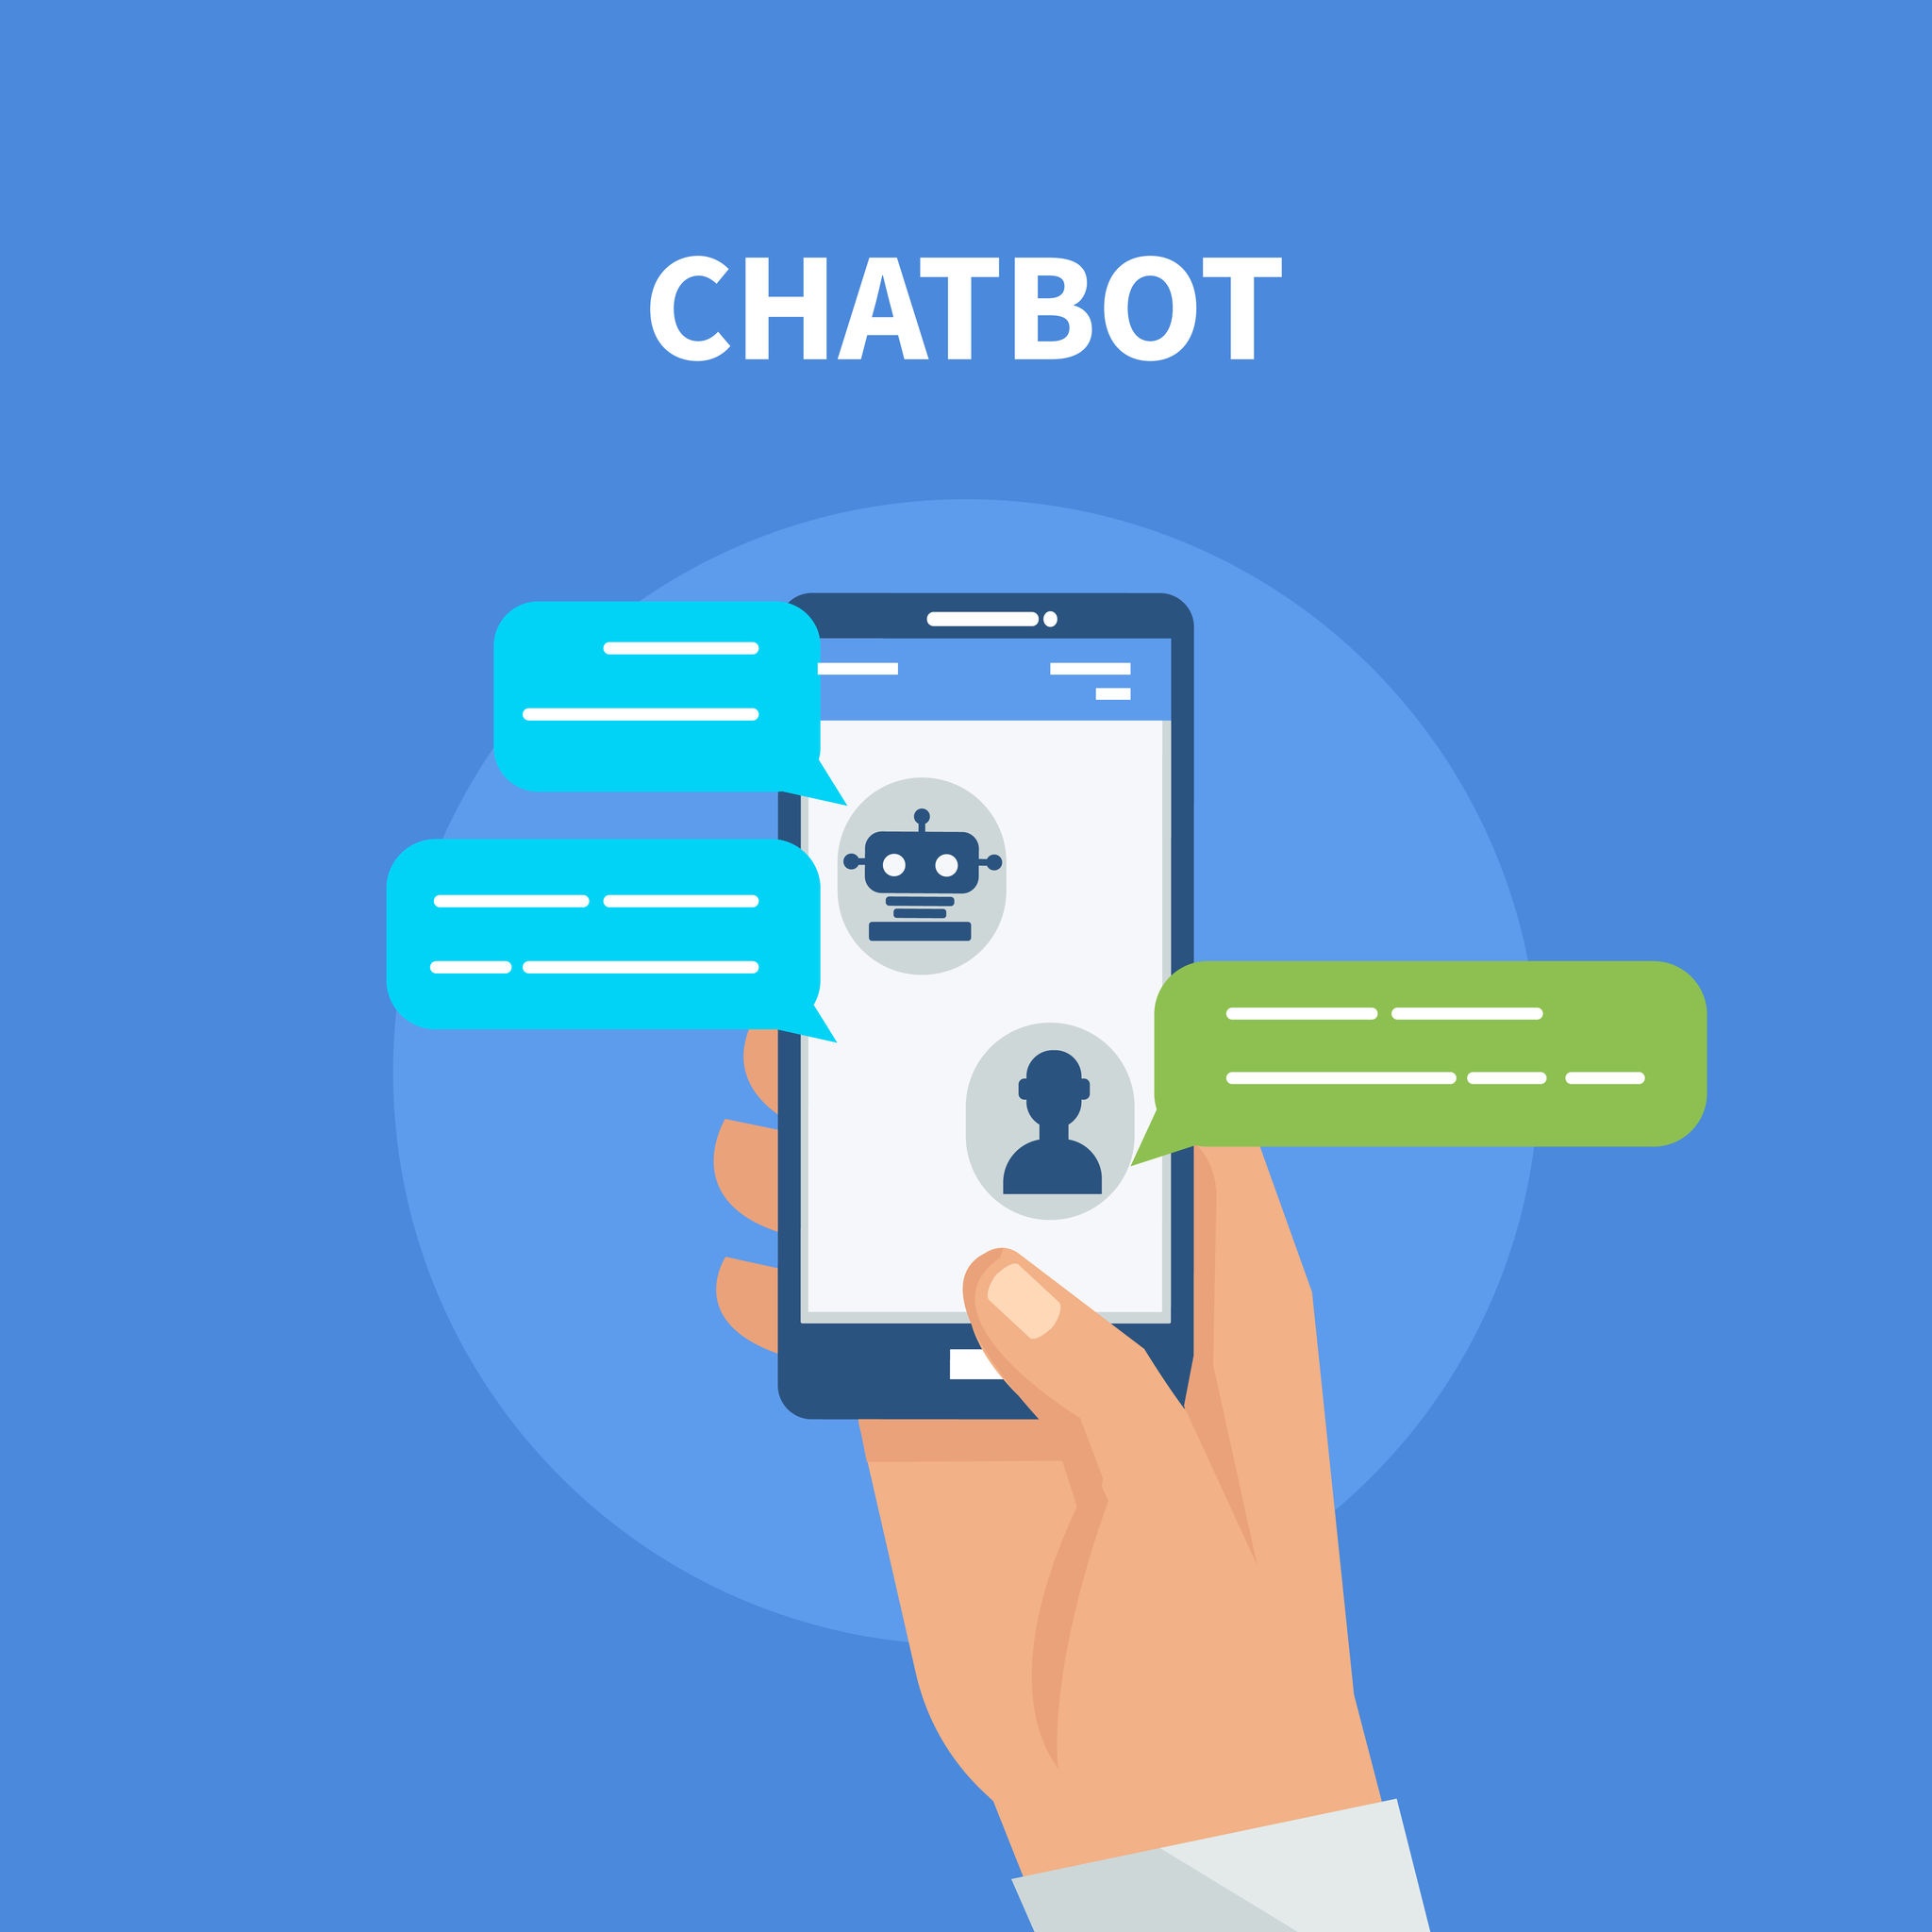 gpt 3 chatbot online